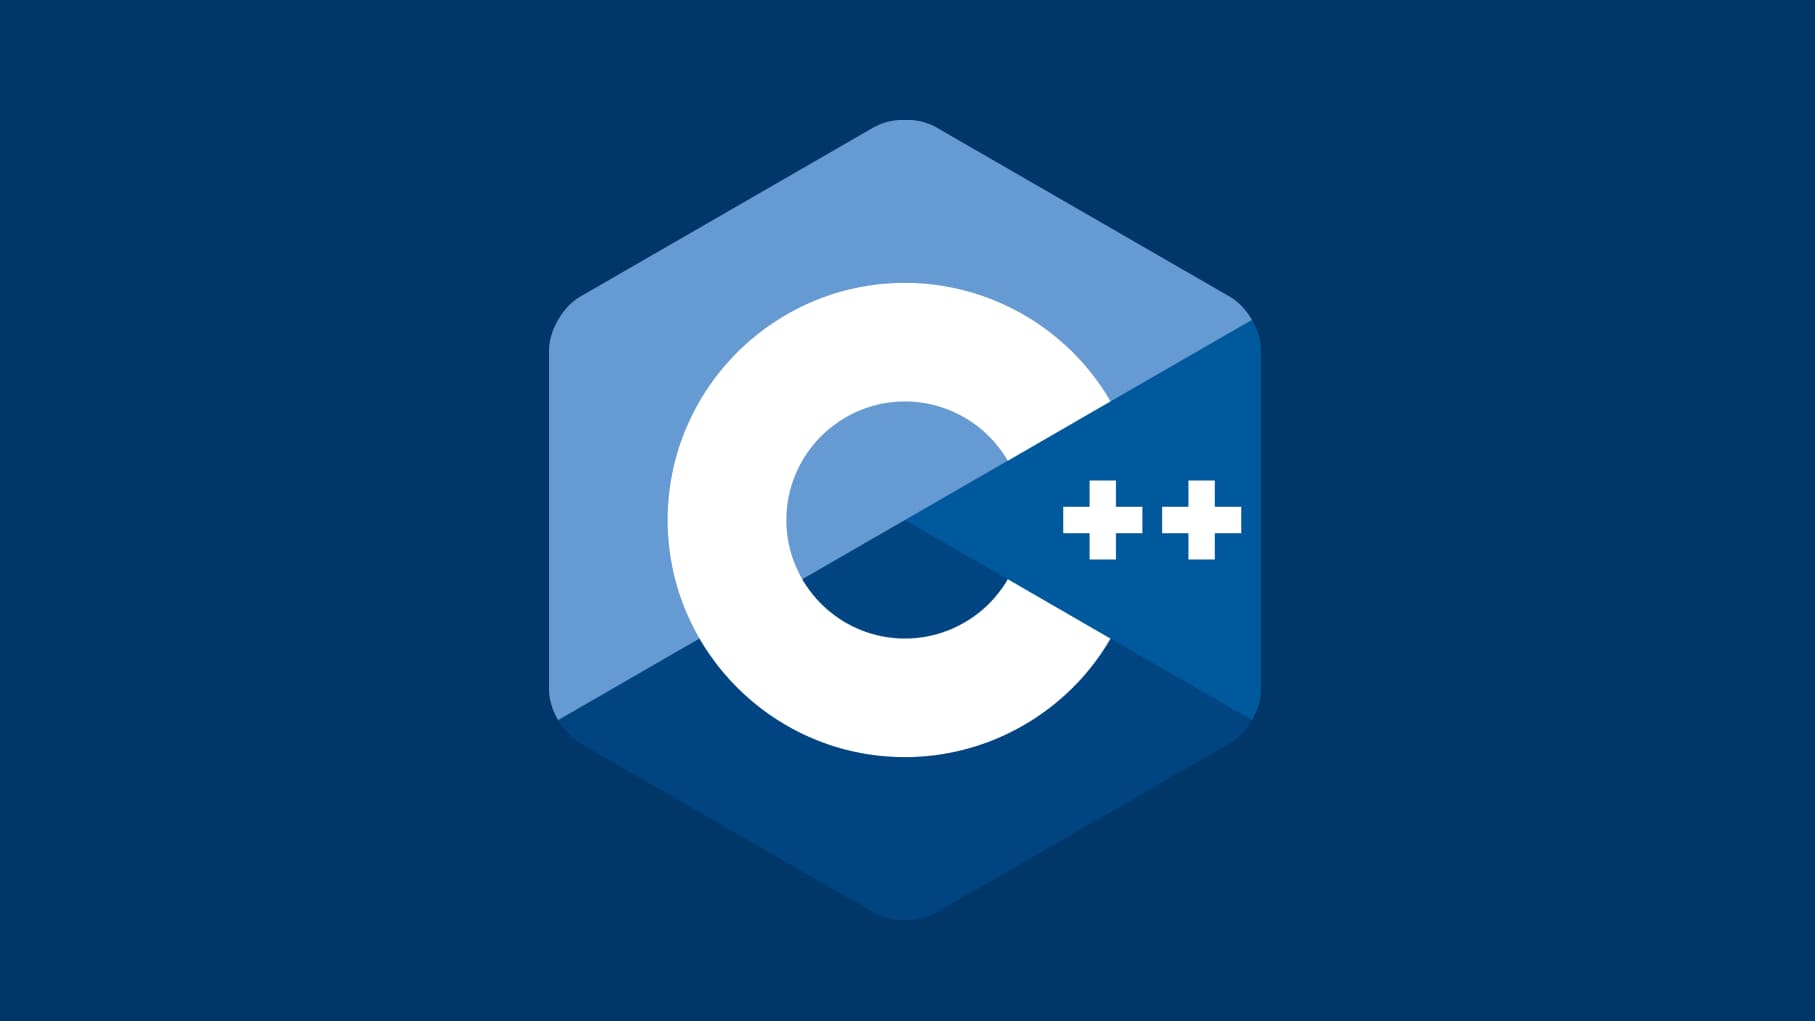 详细说明 C++ 和 C 语言有哪些区别?